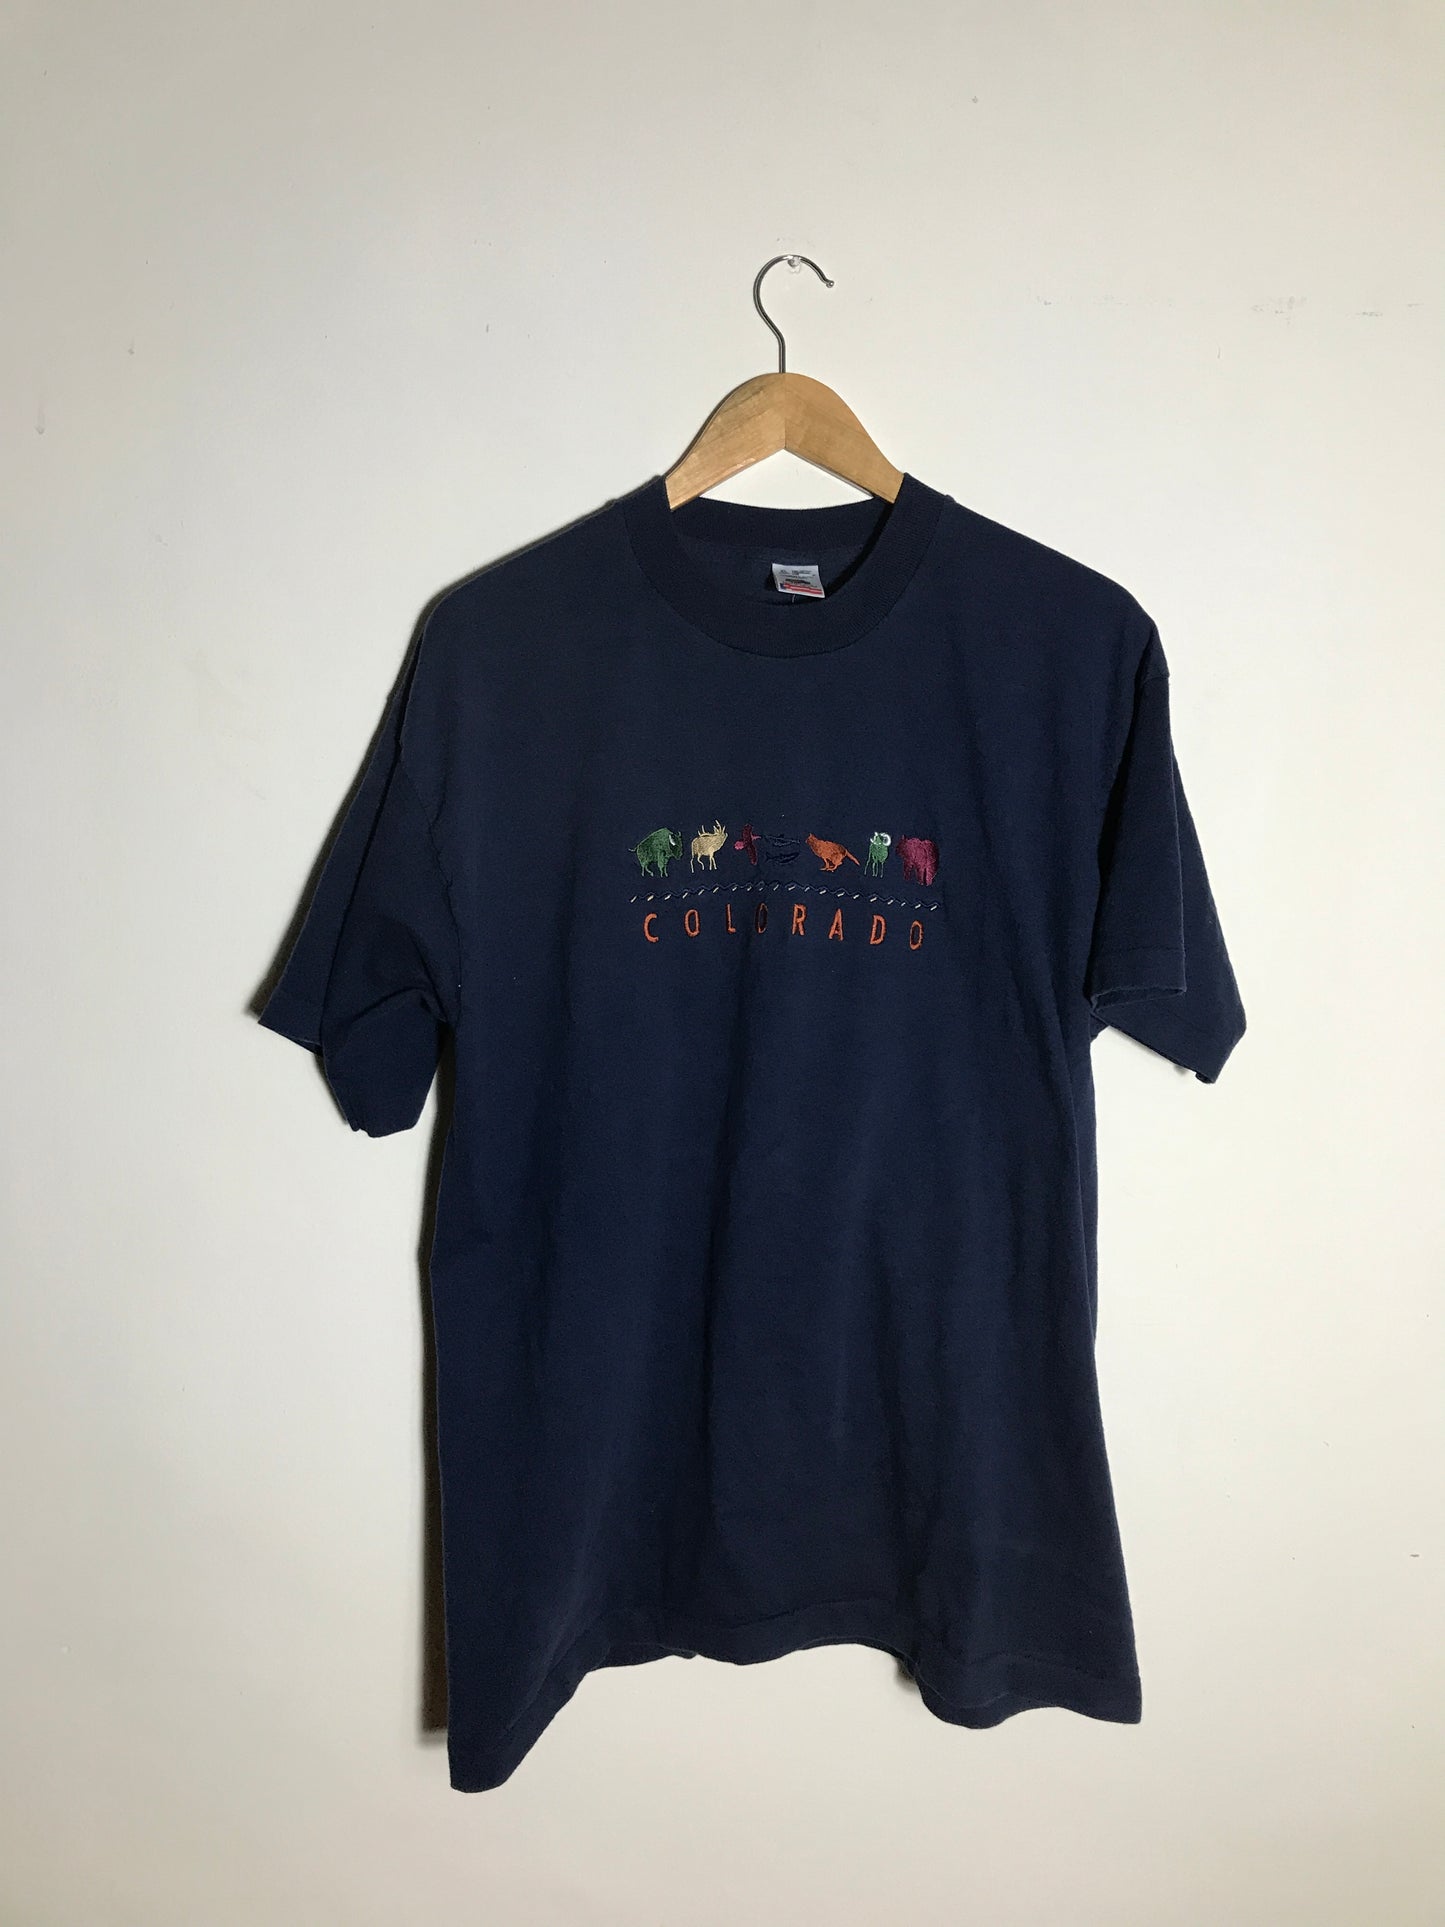 Vintage Colorado T-shirt